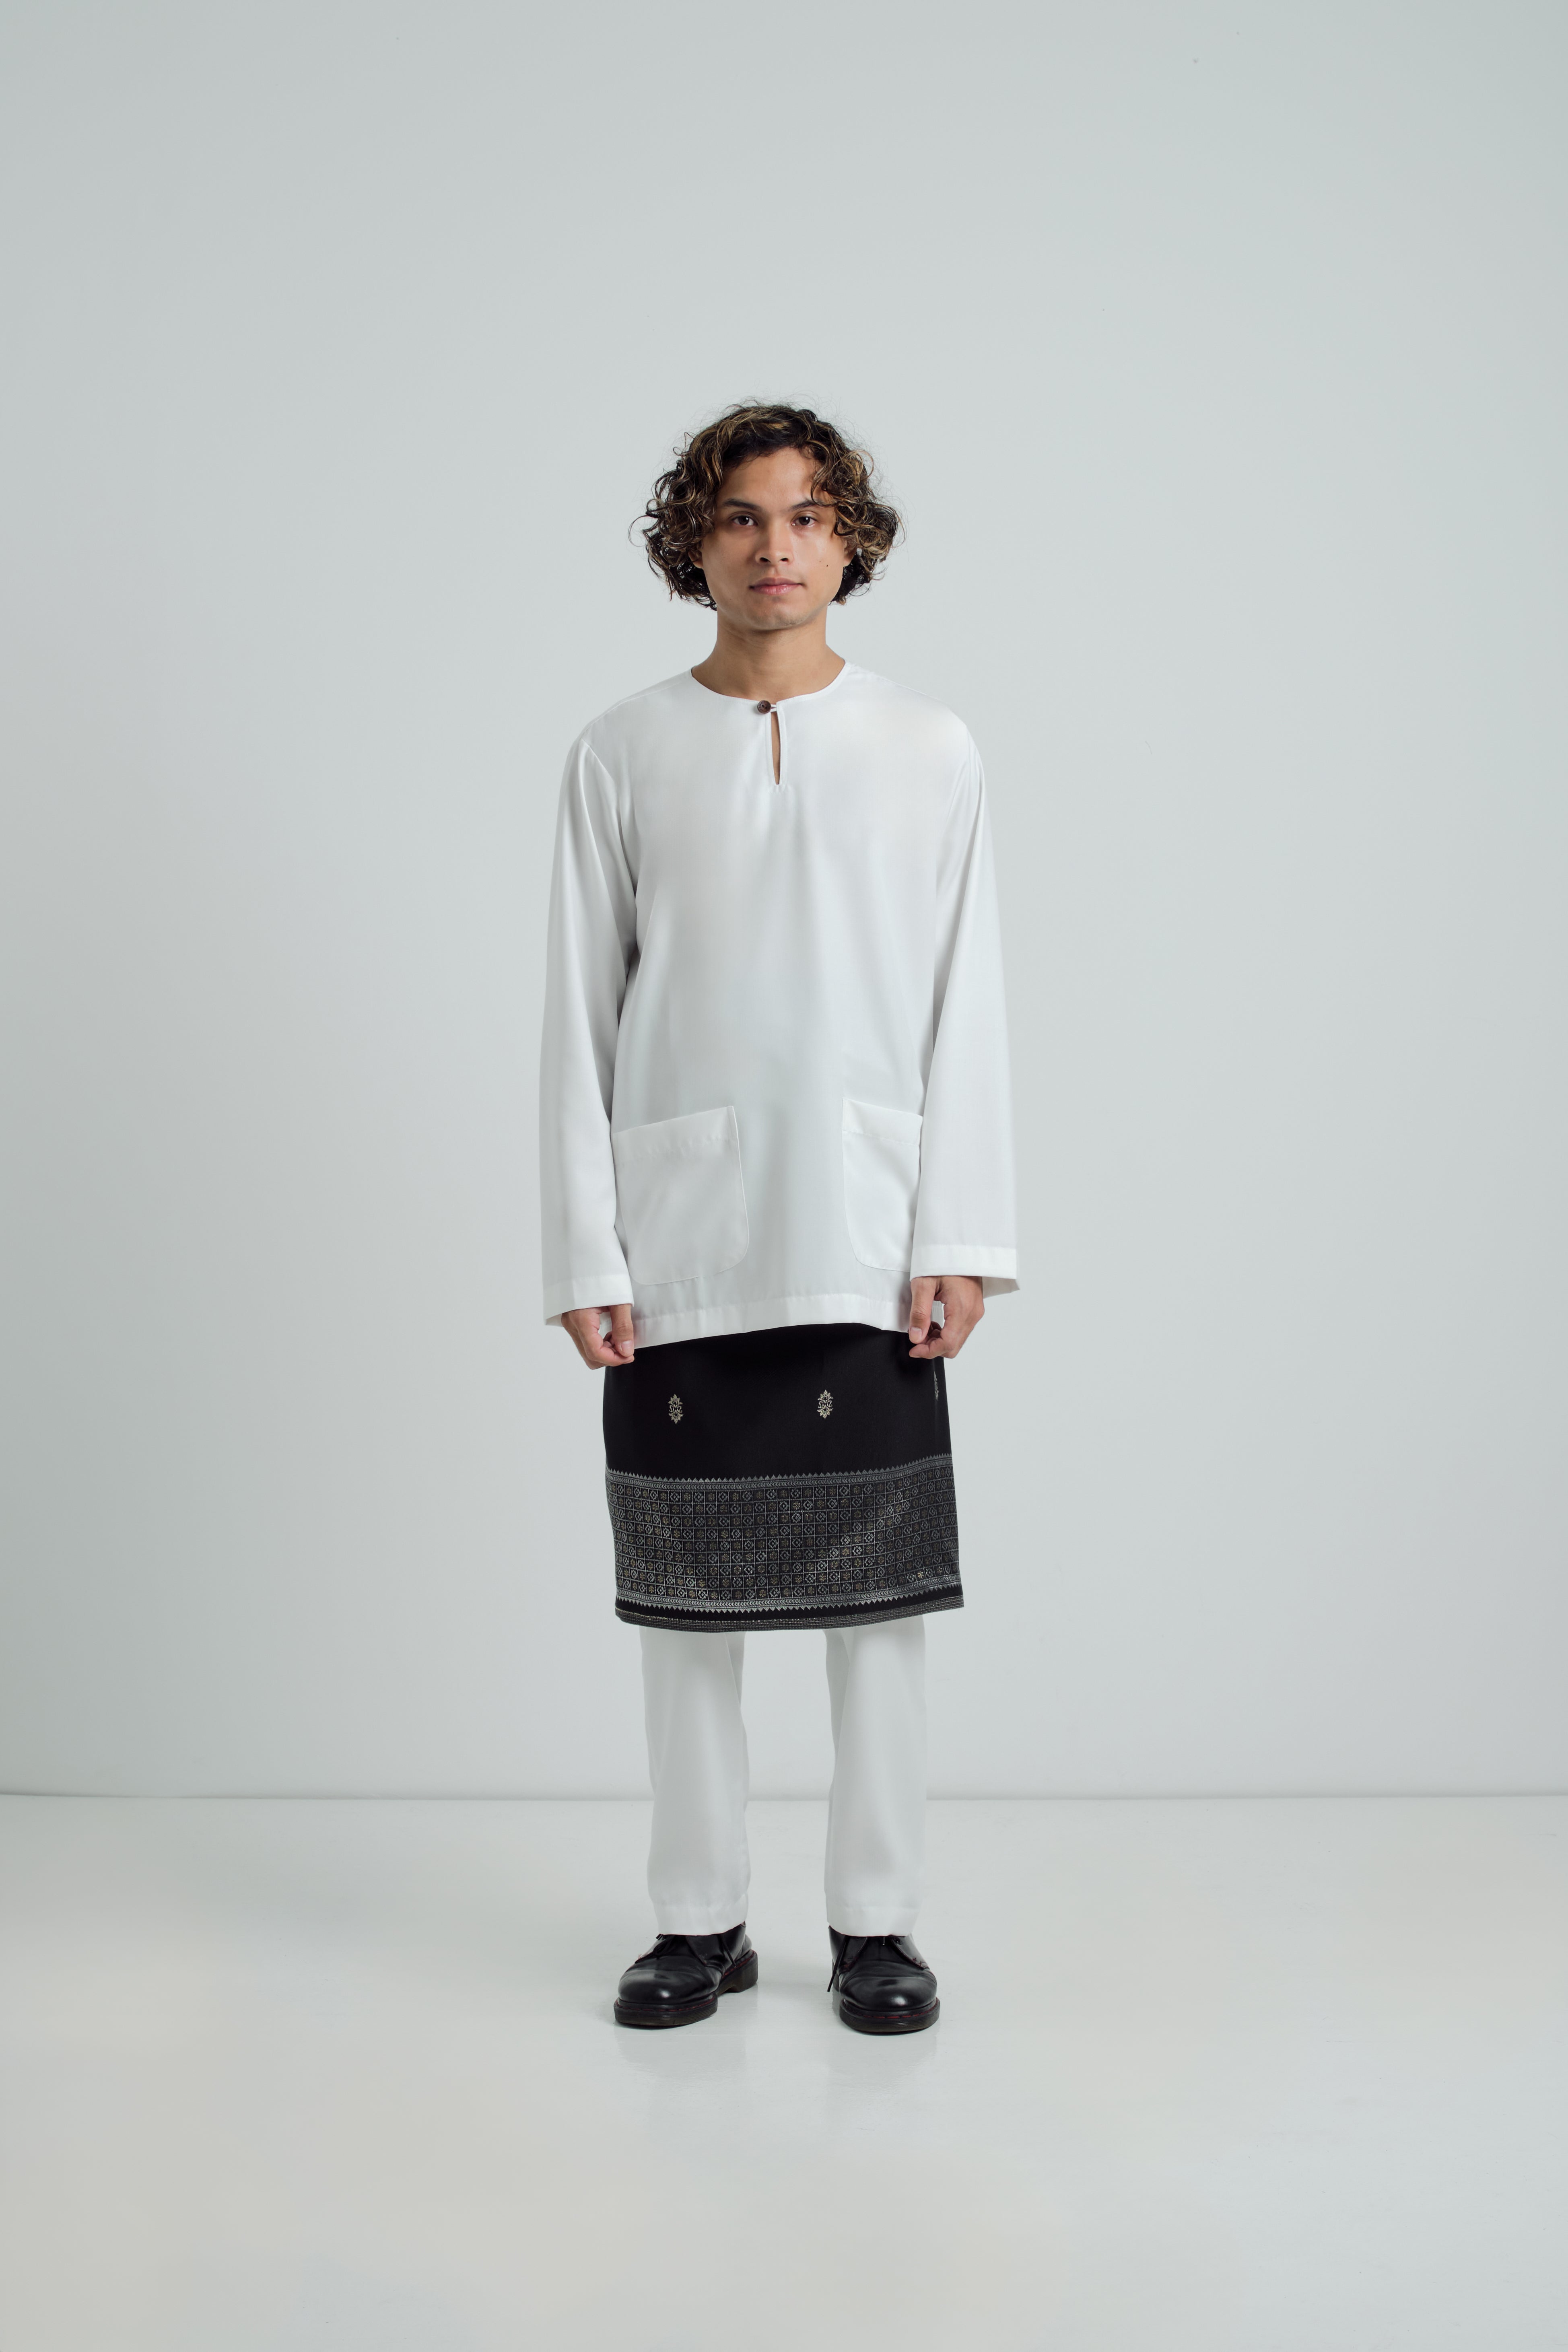 Patawali Modern Fit Baju Melayu Teluk Belanga - Blanc White